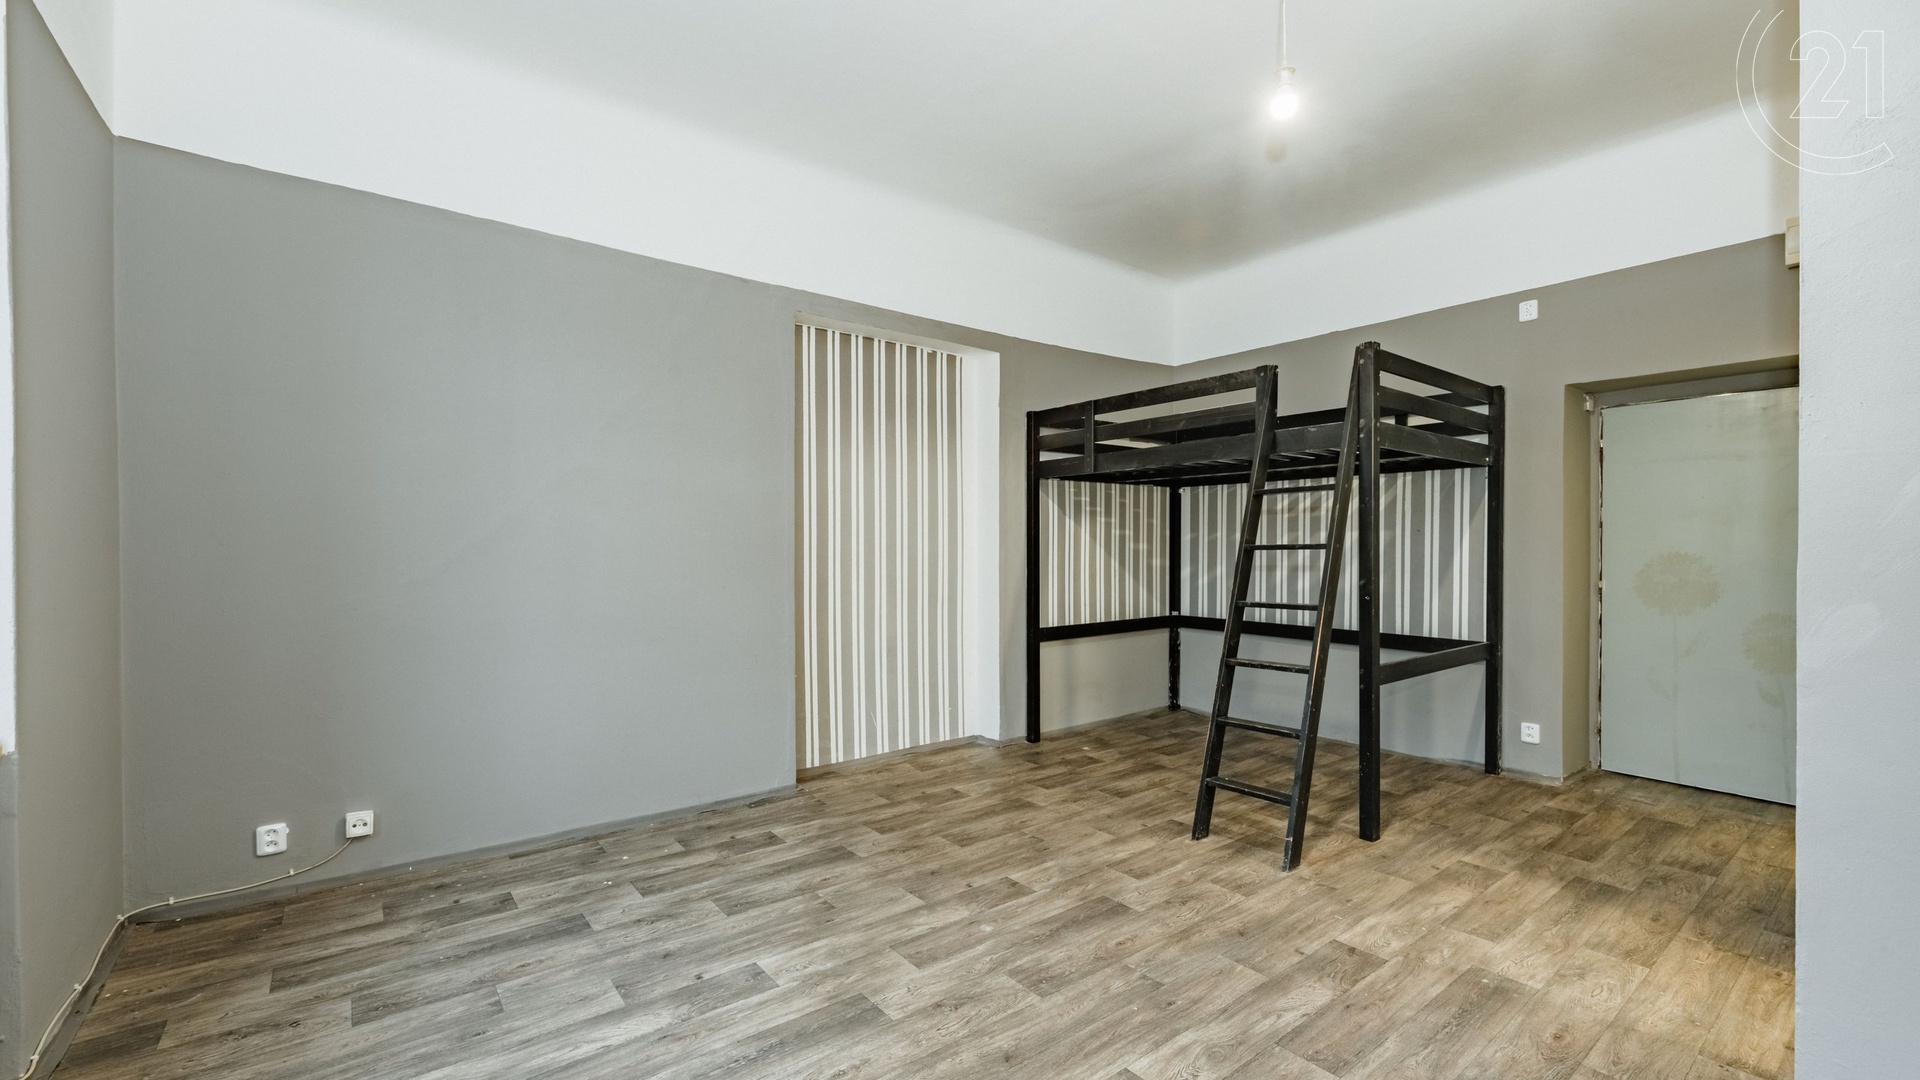 Dlouhodobý pronájem bytu 1+0, 28 m², v centru města Tábora - nám. F. Křižíka